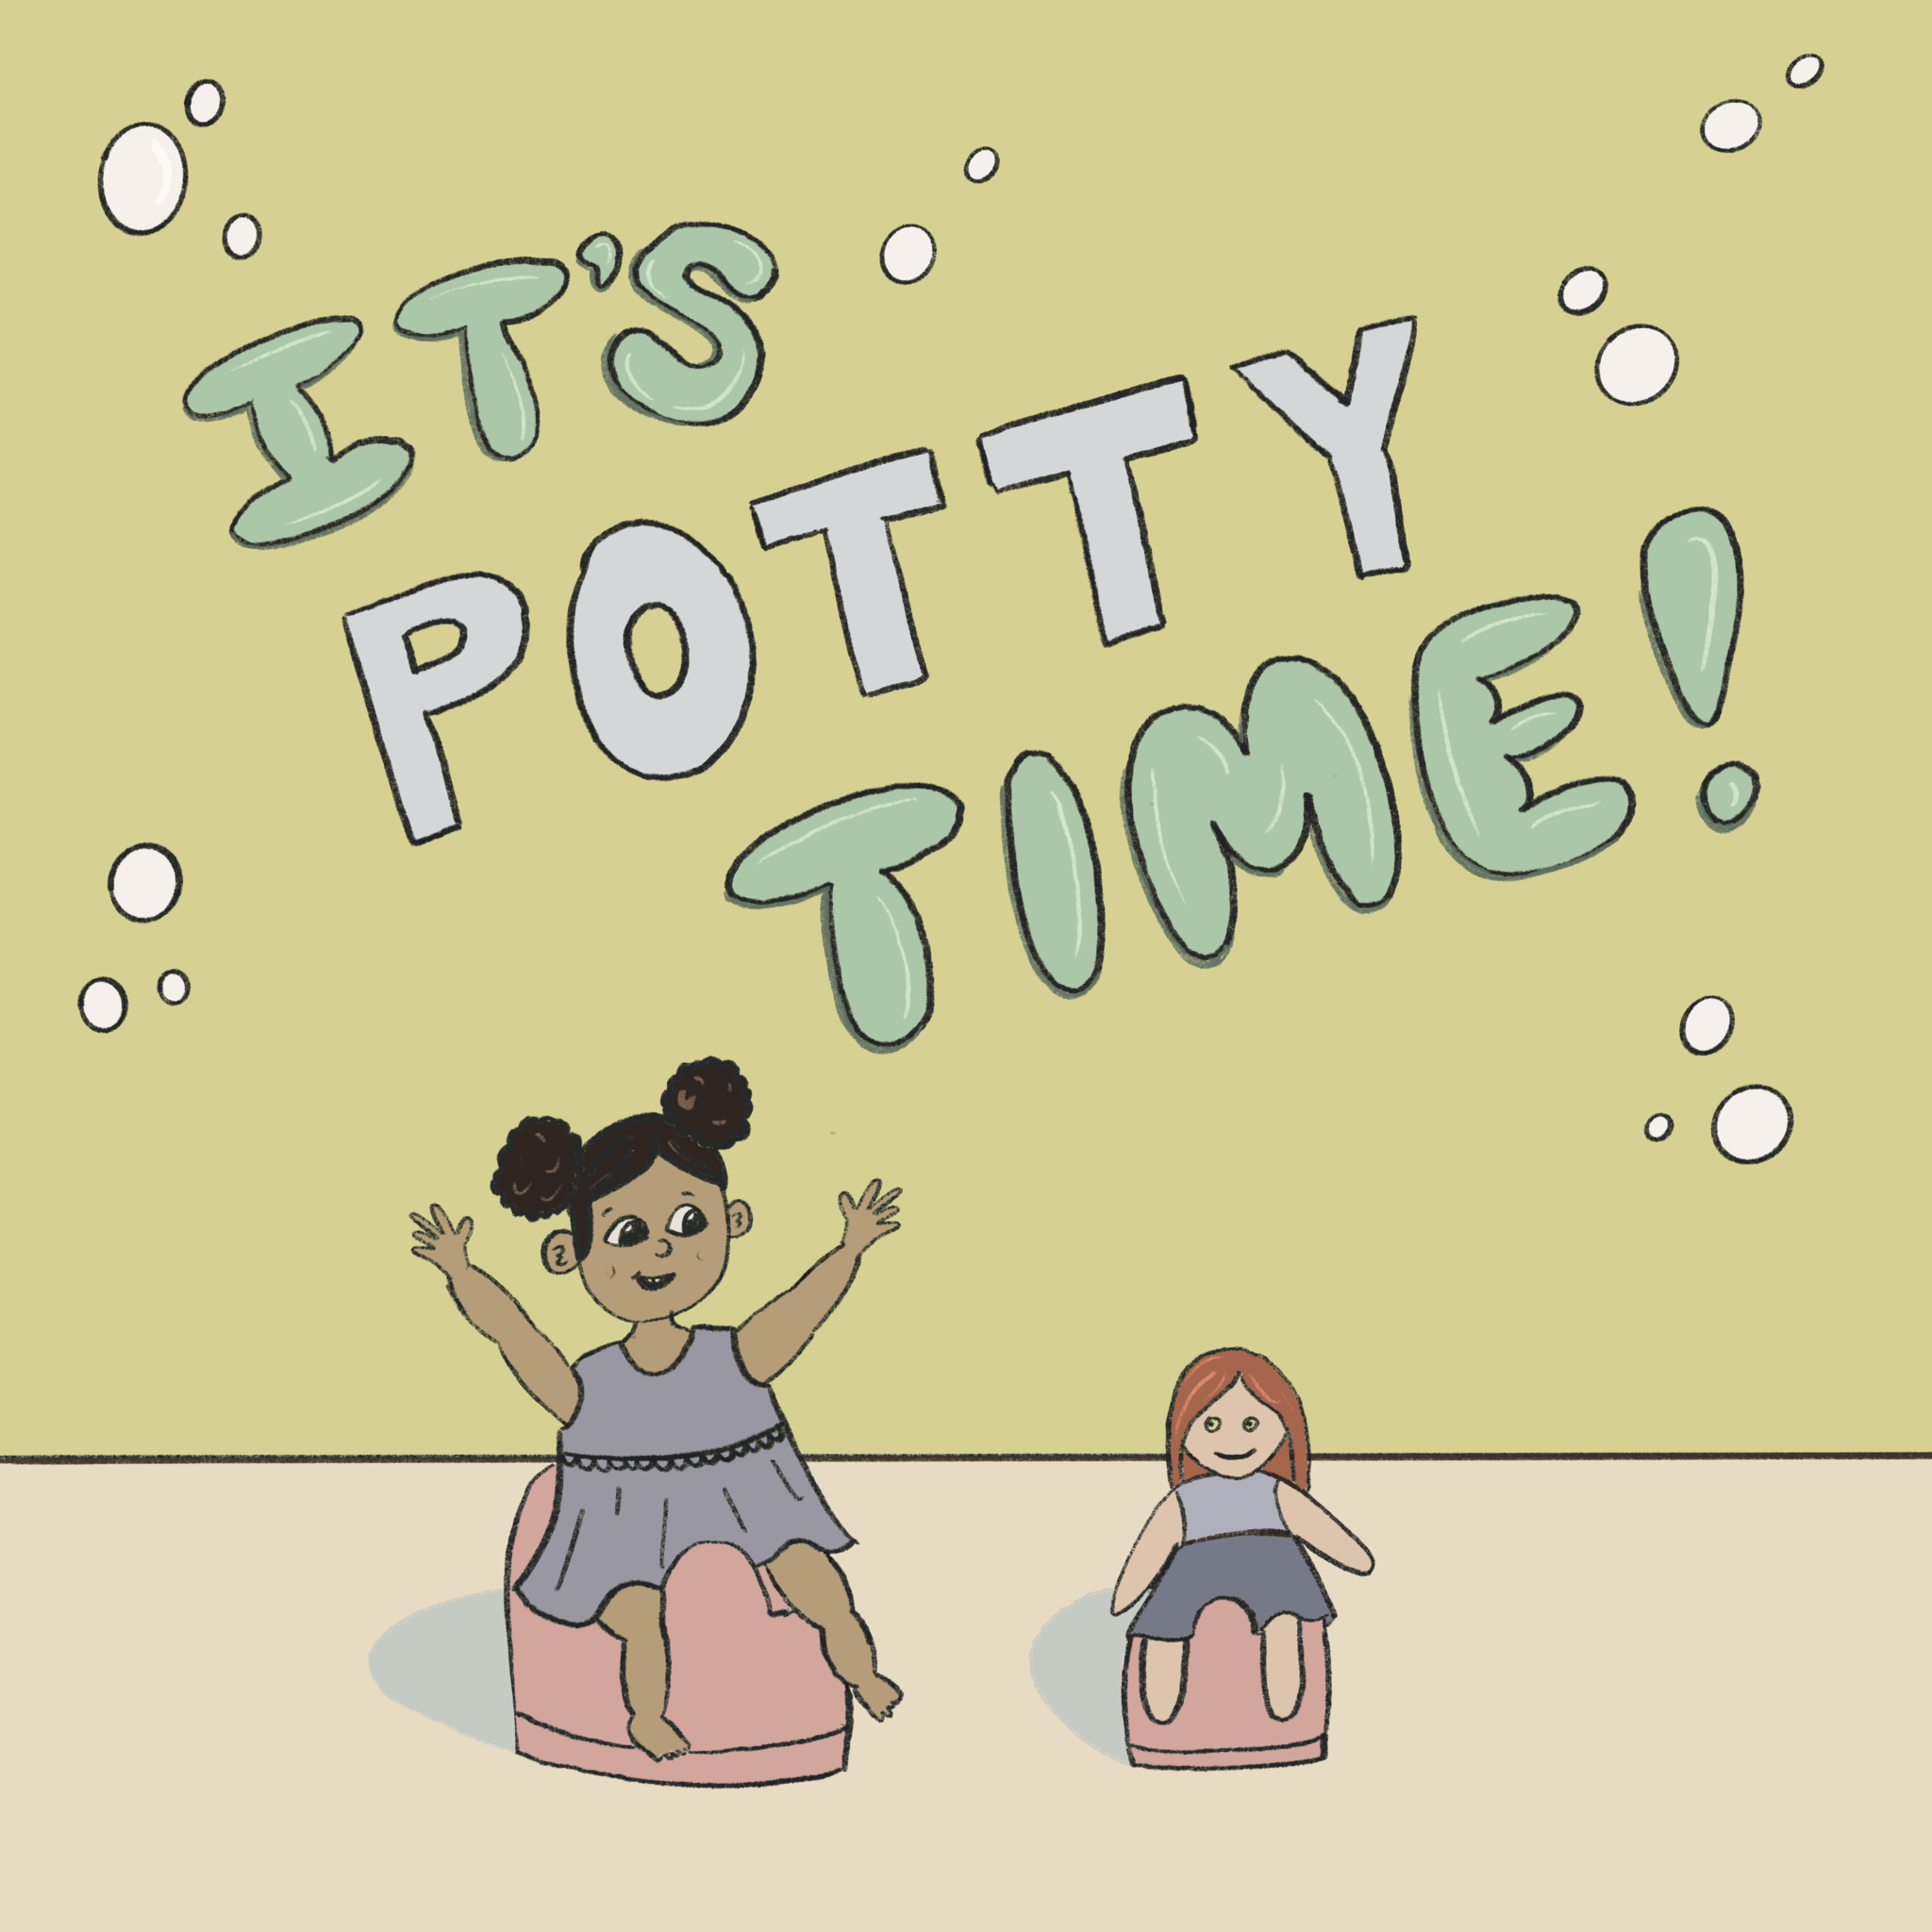 It's Potty Time!